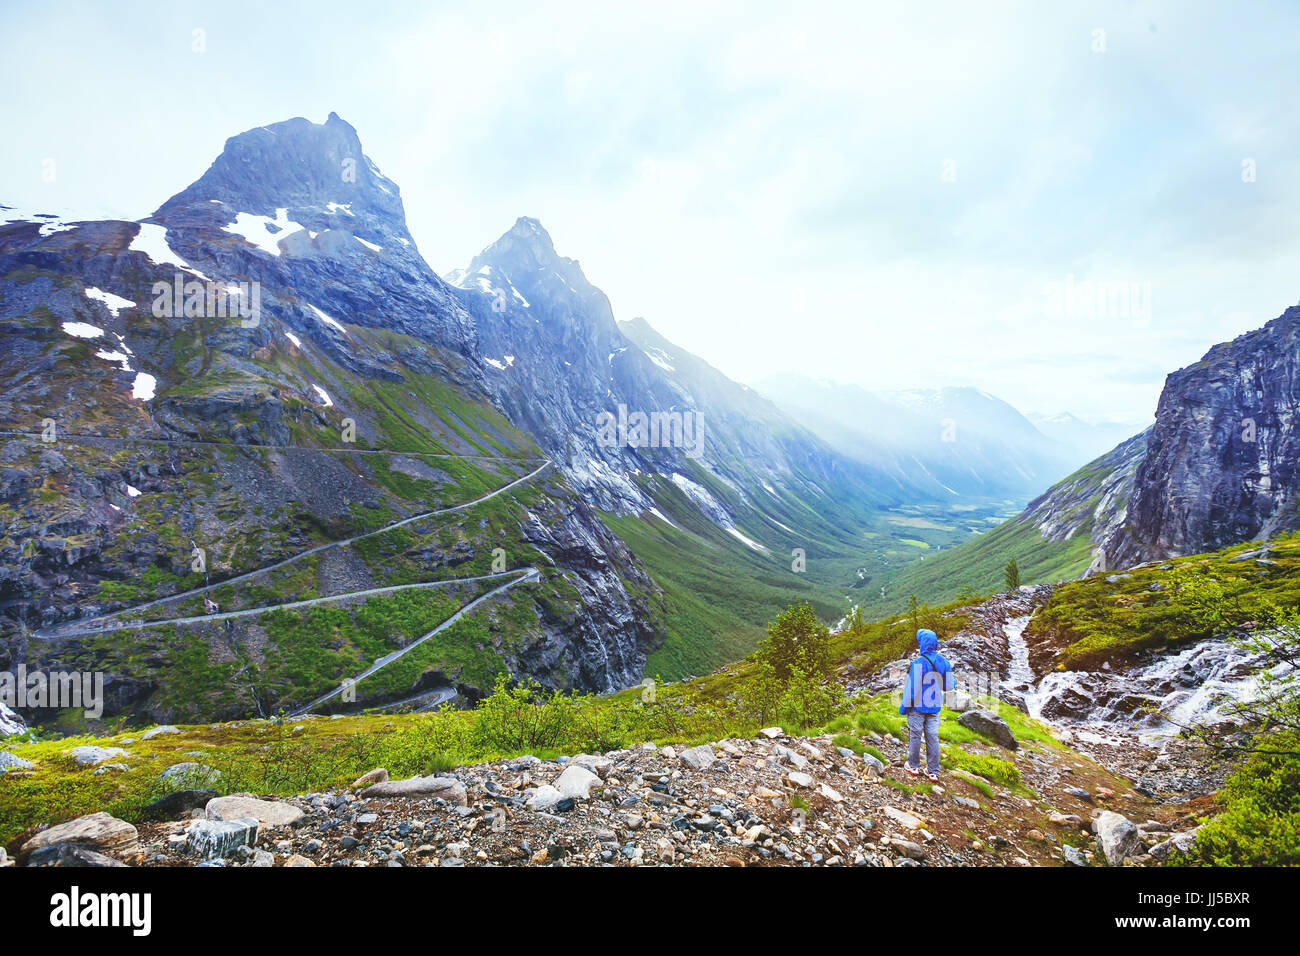 Trollstigen in Norvegia, turistico guardando alla strada di montagna in uno splendido paesaggio bello Foto Stock